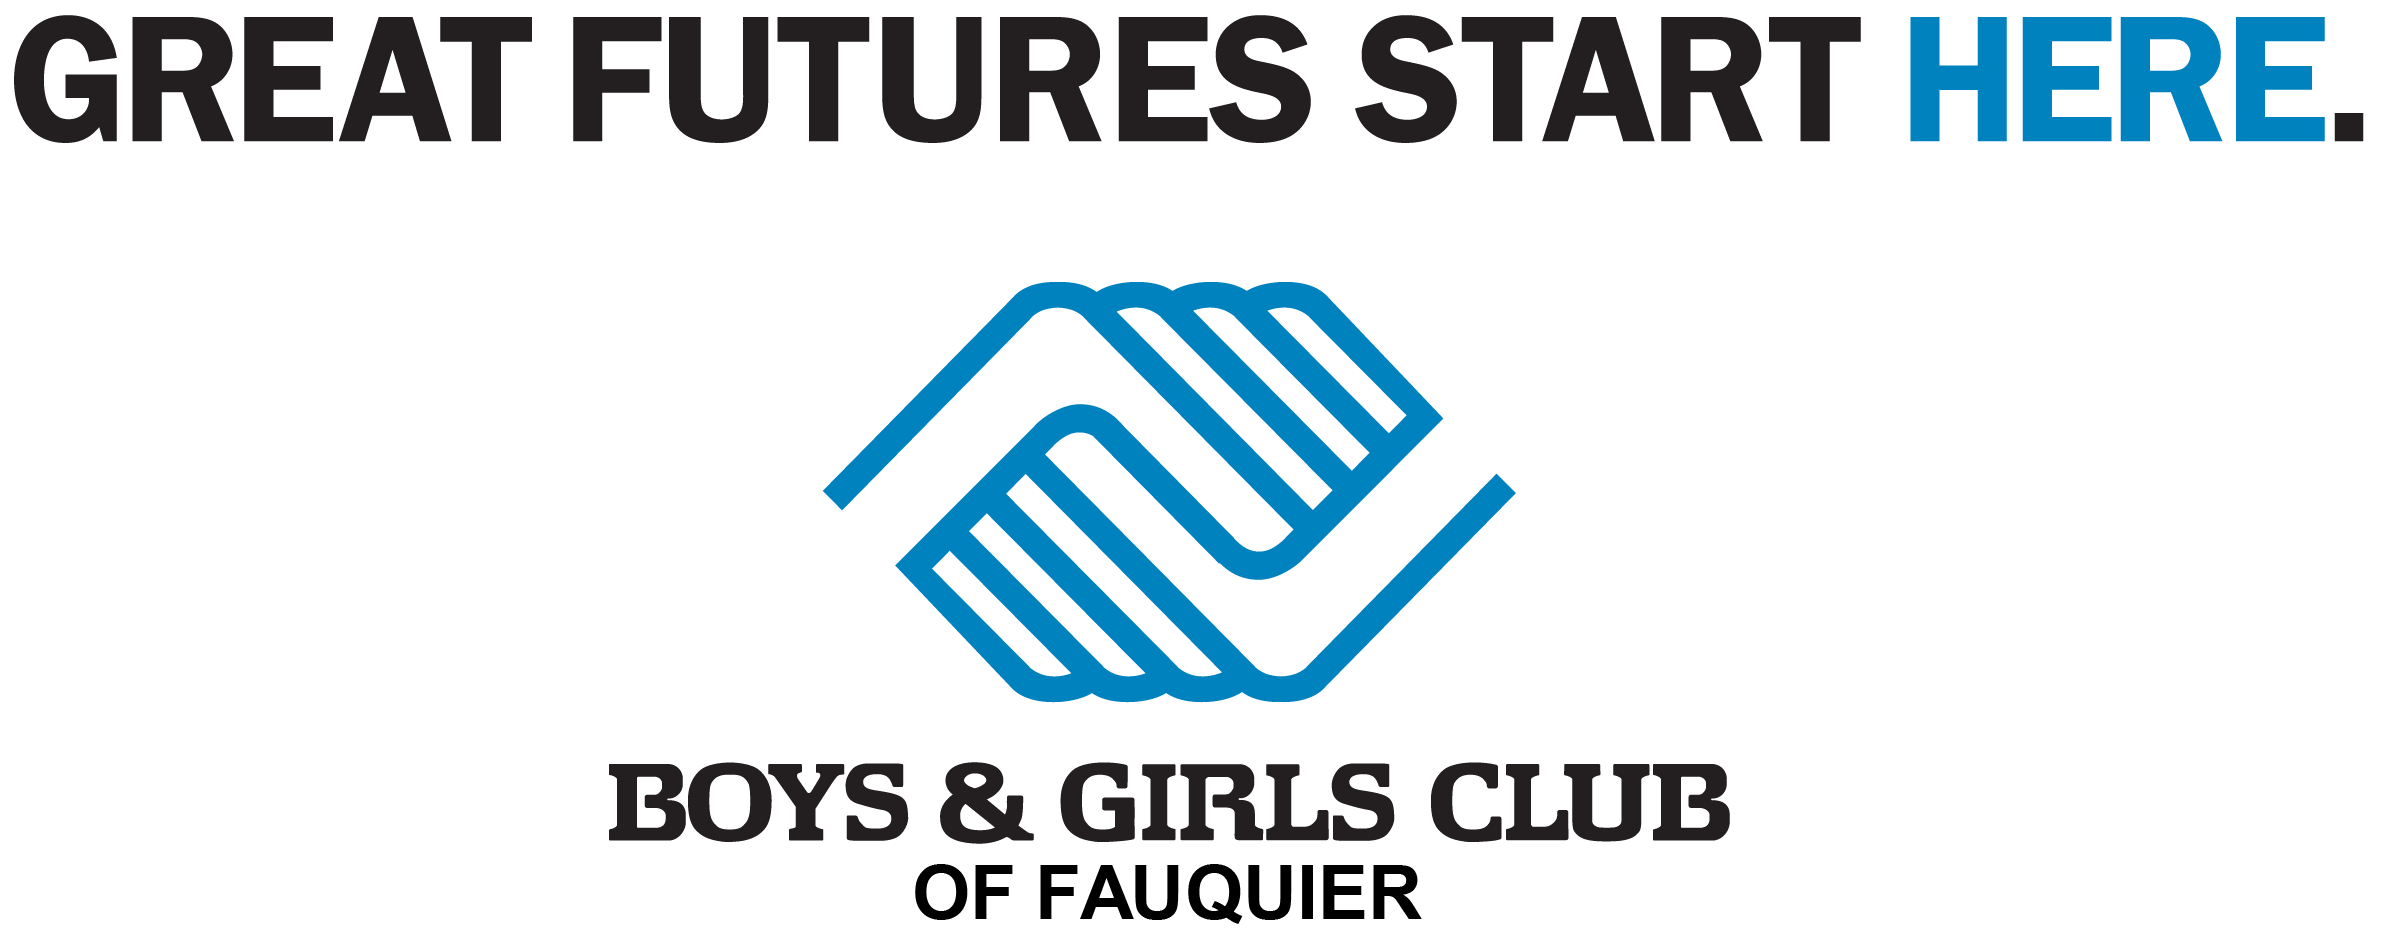 Boys & Girls Club of Fauquier Logo